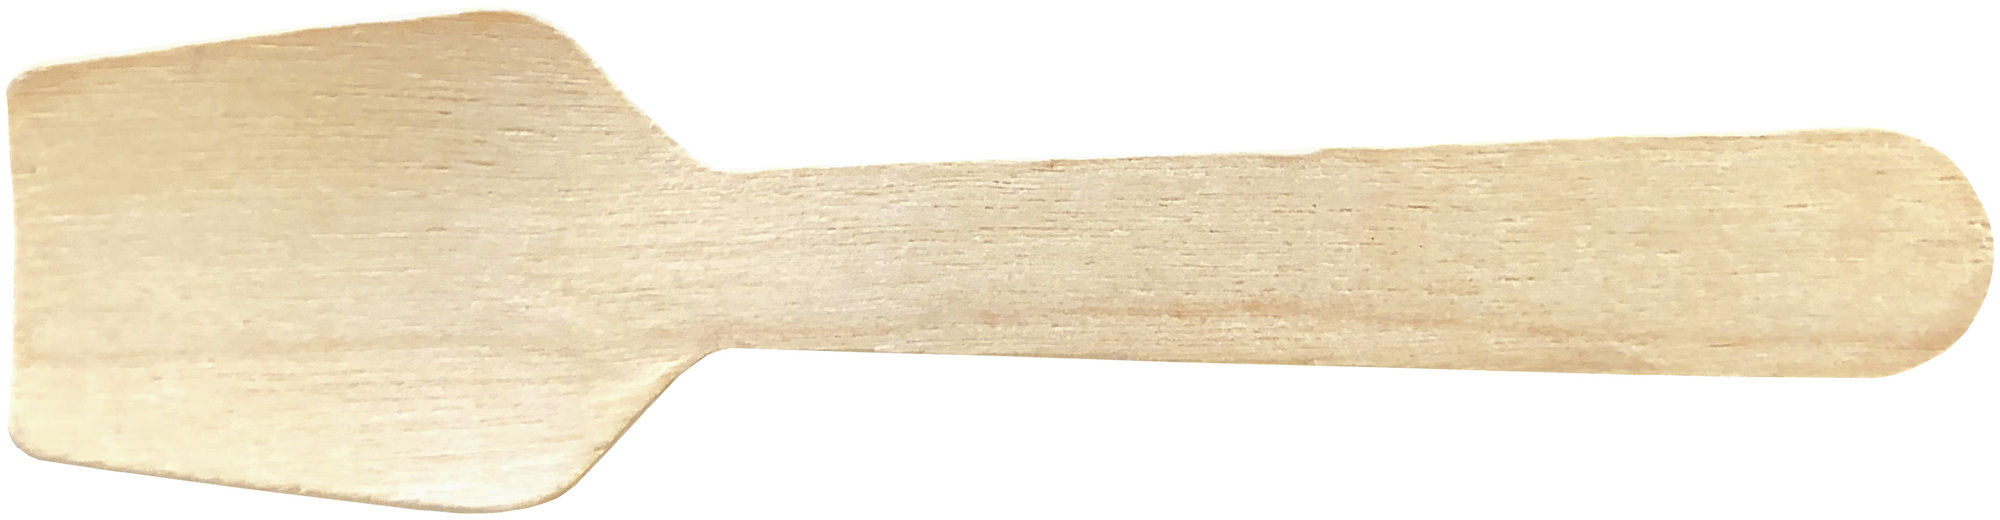 Eisspaten aus Holz